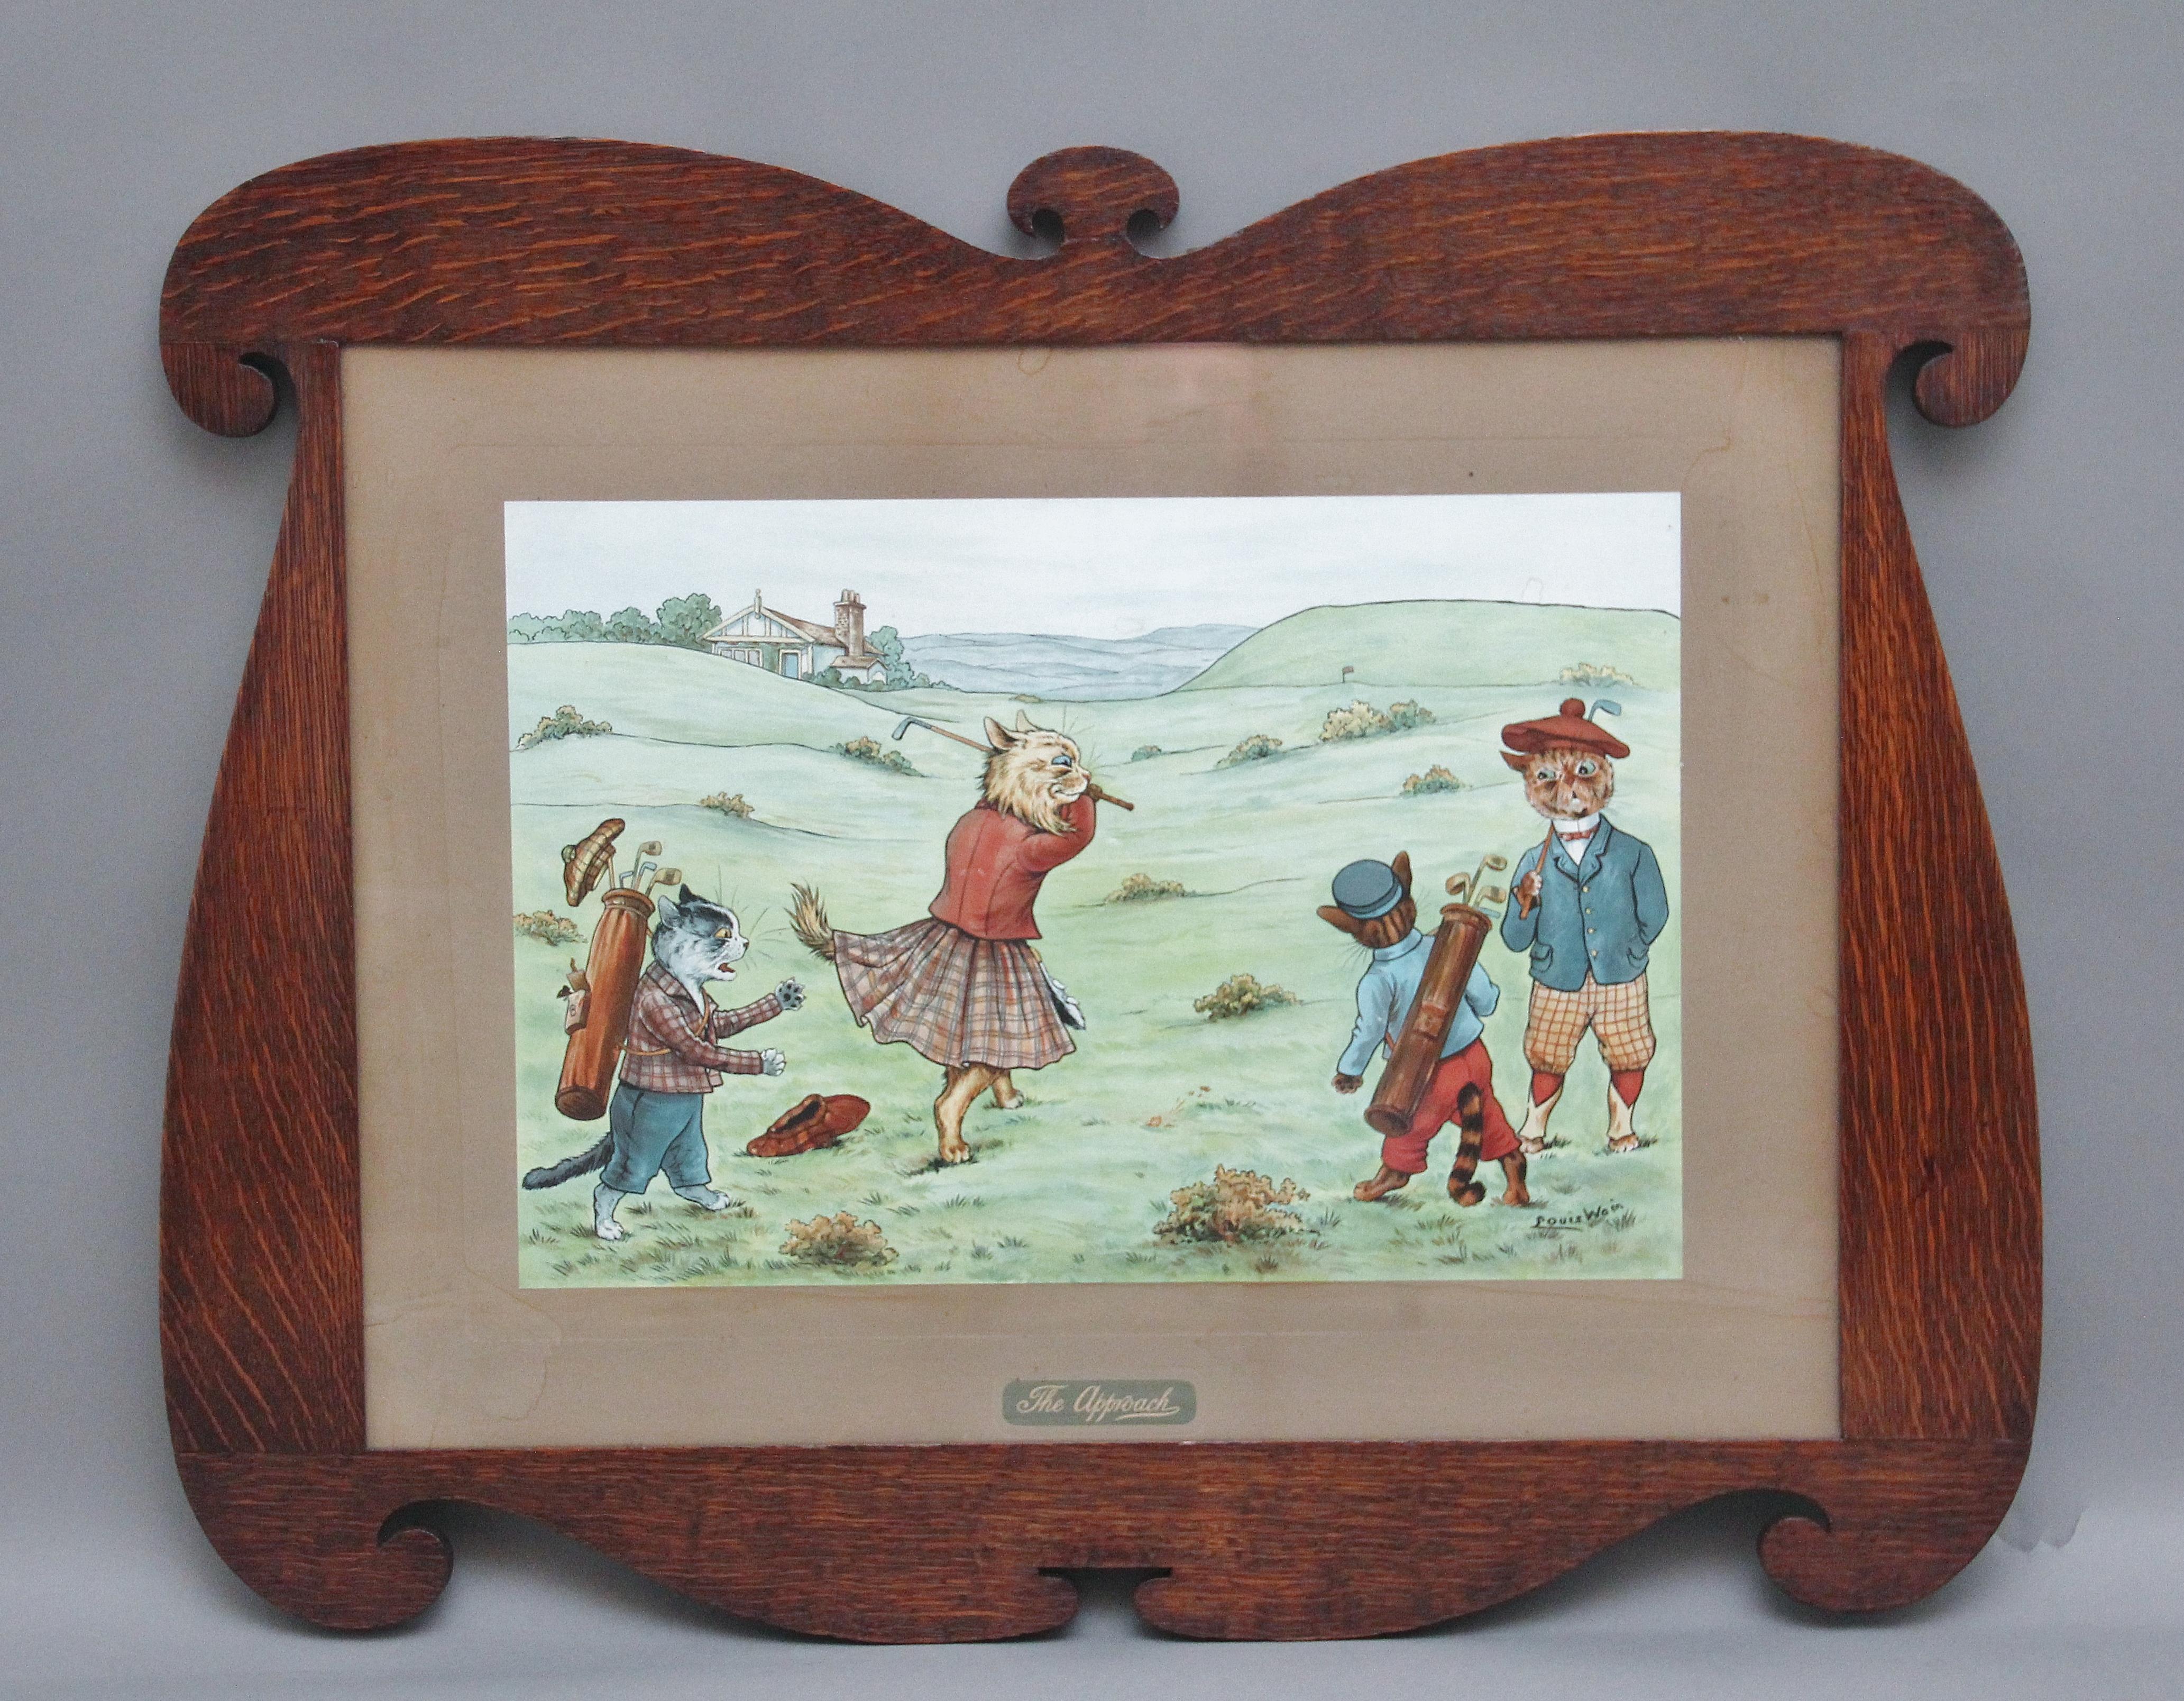 Un ensemble de quatre estampes encadrées de Louis Wain du début du 20e siècle représentant des chats comiques jouant au golf et placées dans leurs cadres en chêne d'origine, chaque estampe étant signée et titrée, les estampes représentent The Drive